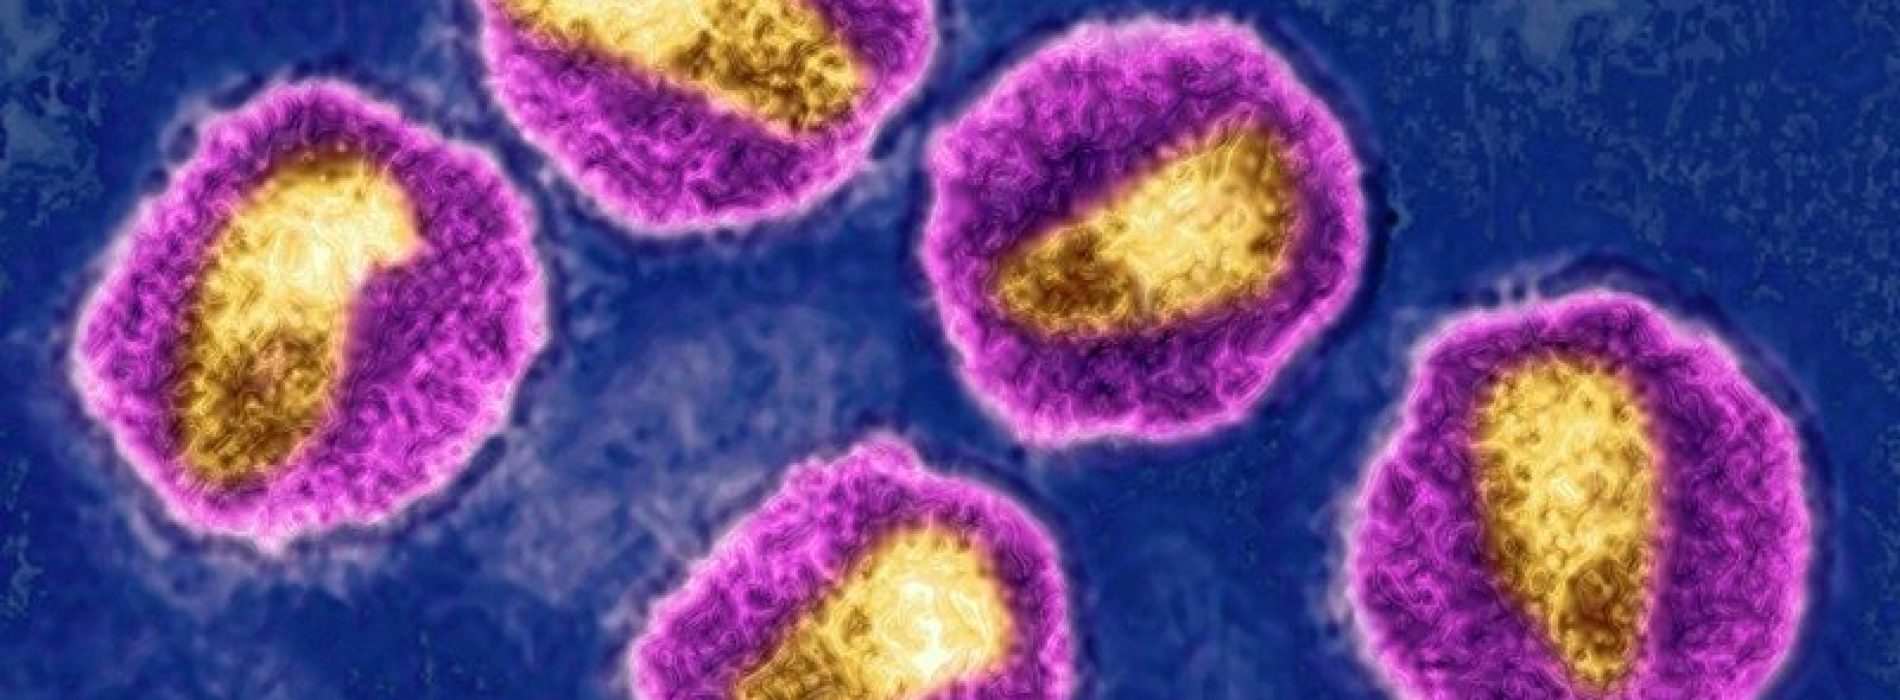 Zeer virulente hiv-variant ontdekt die in Europa circuleert